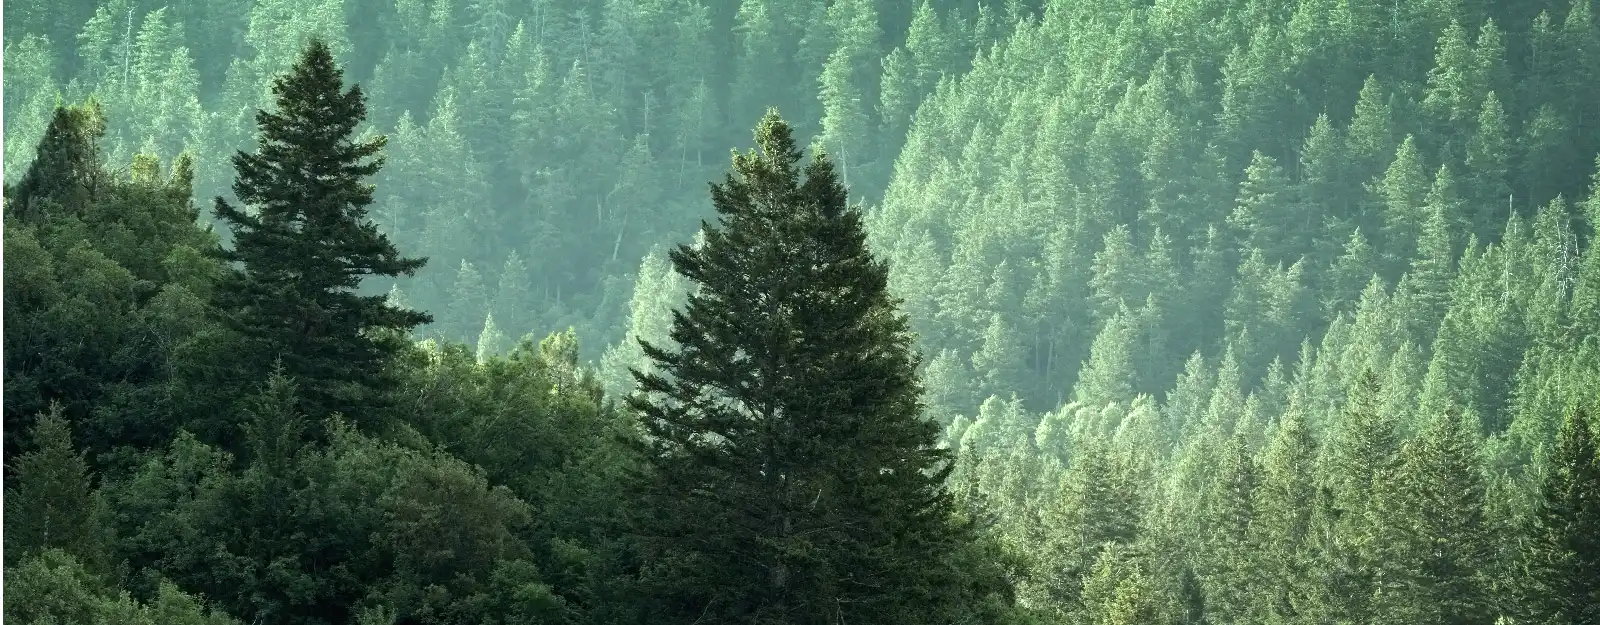 Forrest scene of evergreen trees